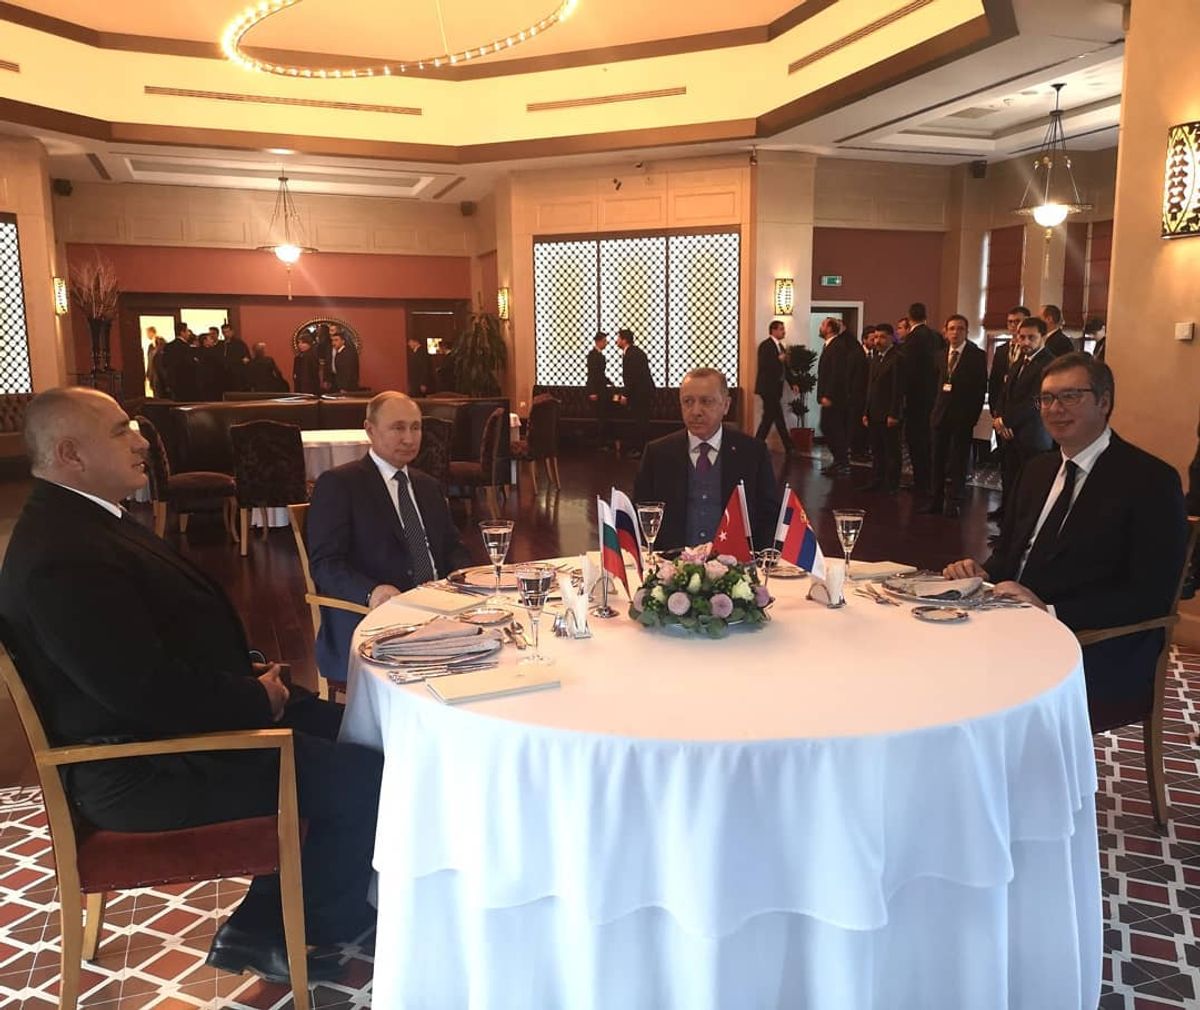 Predsednik Vučić prisustvovao svečanosti povodom puštanja u rad deonice gasovoda Turski tok u Istanbulu